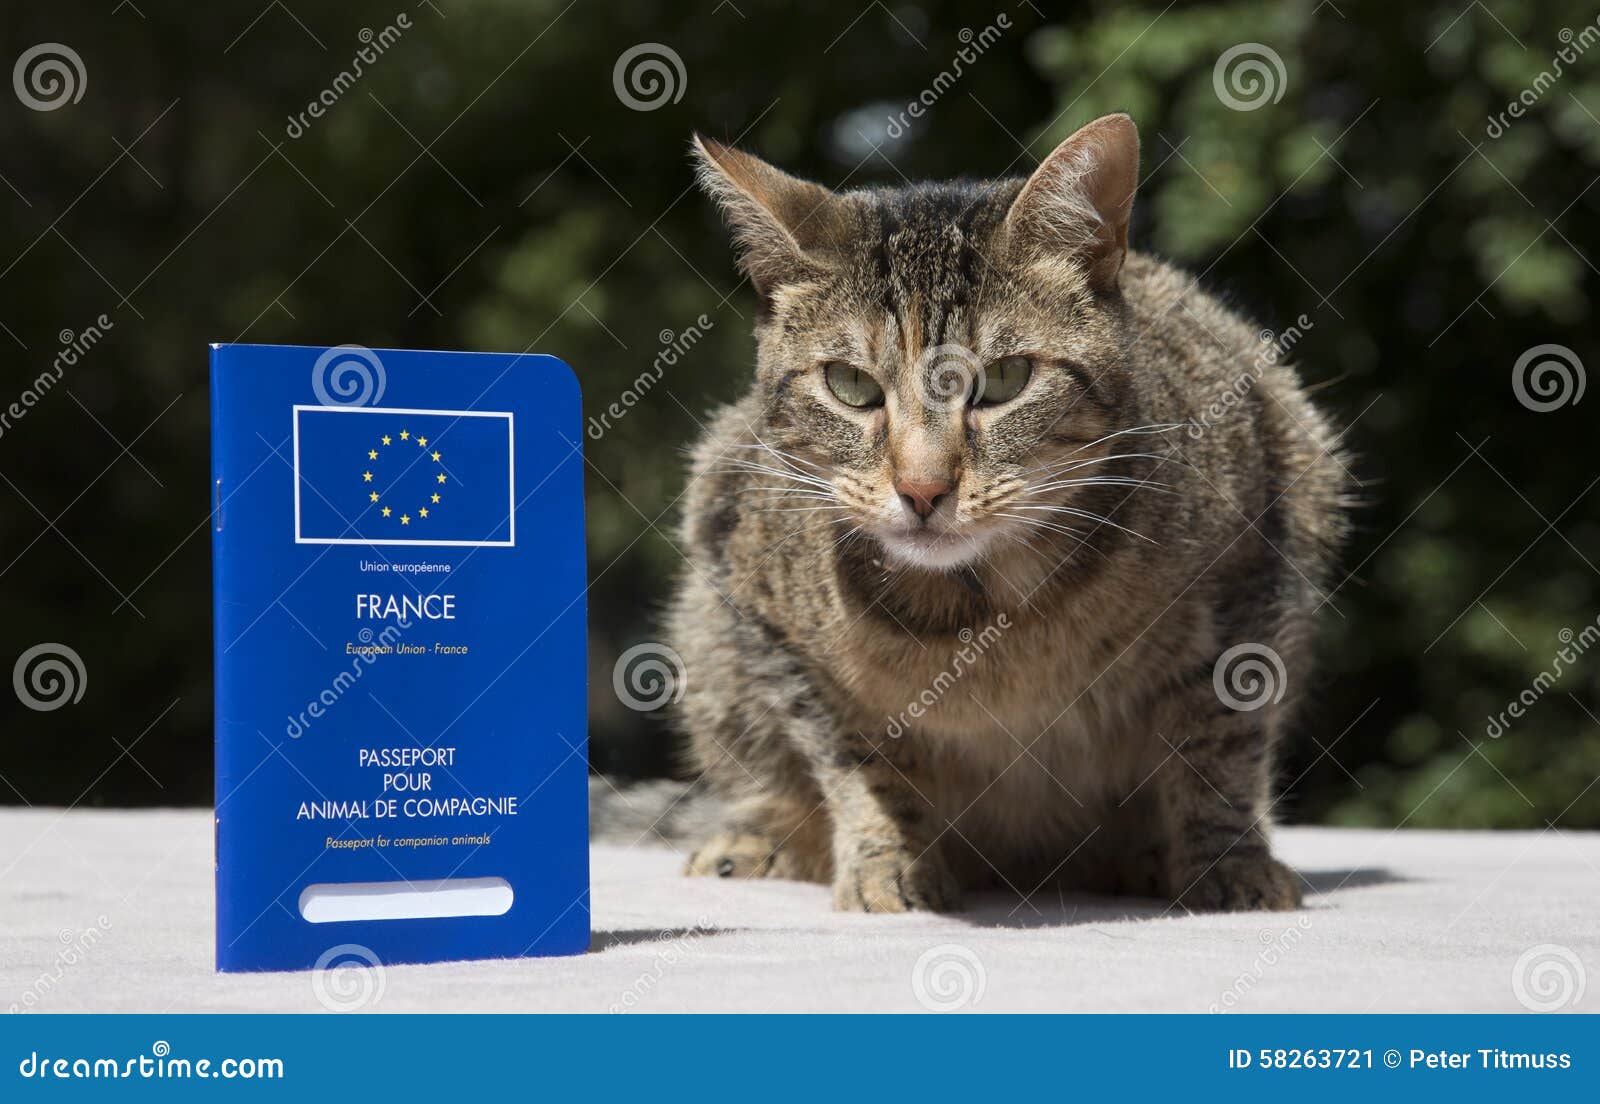 Reisepass Für Katzen